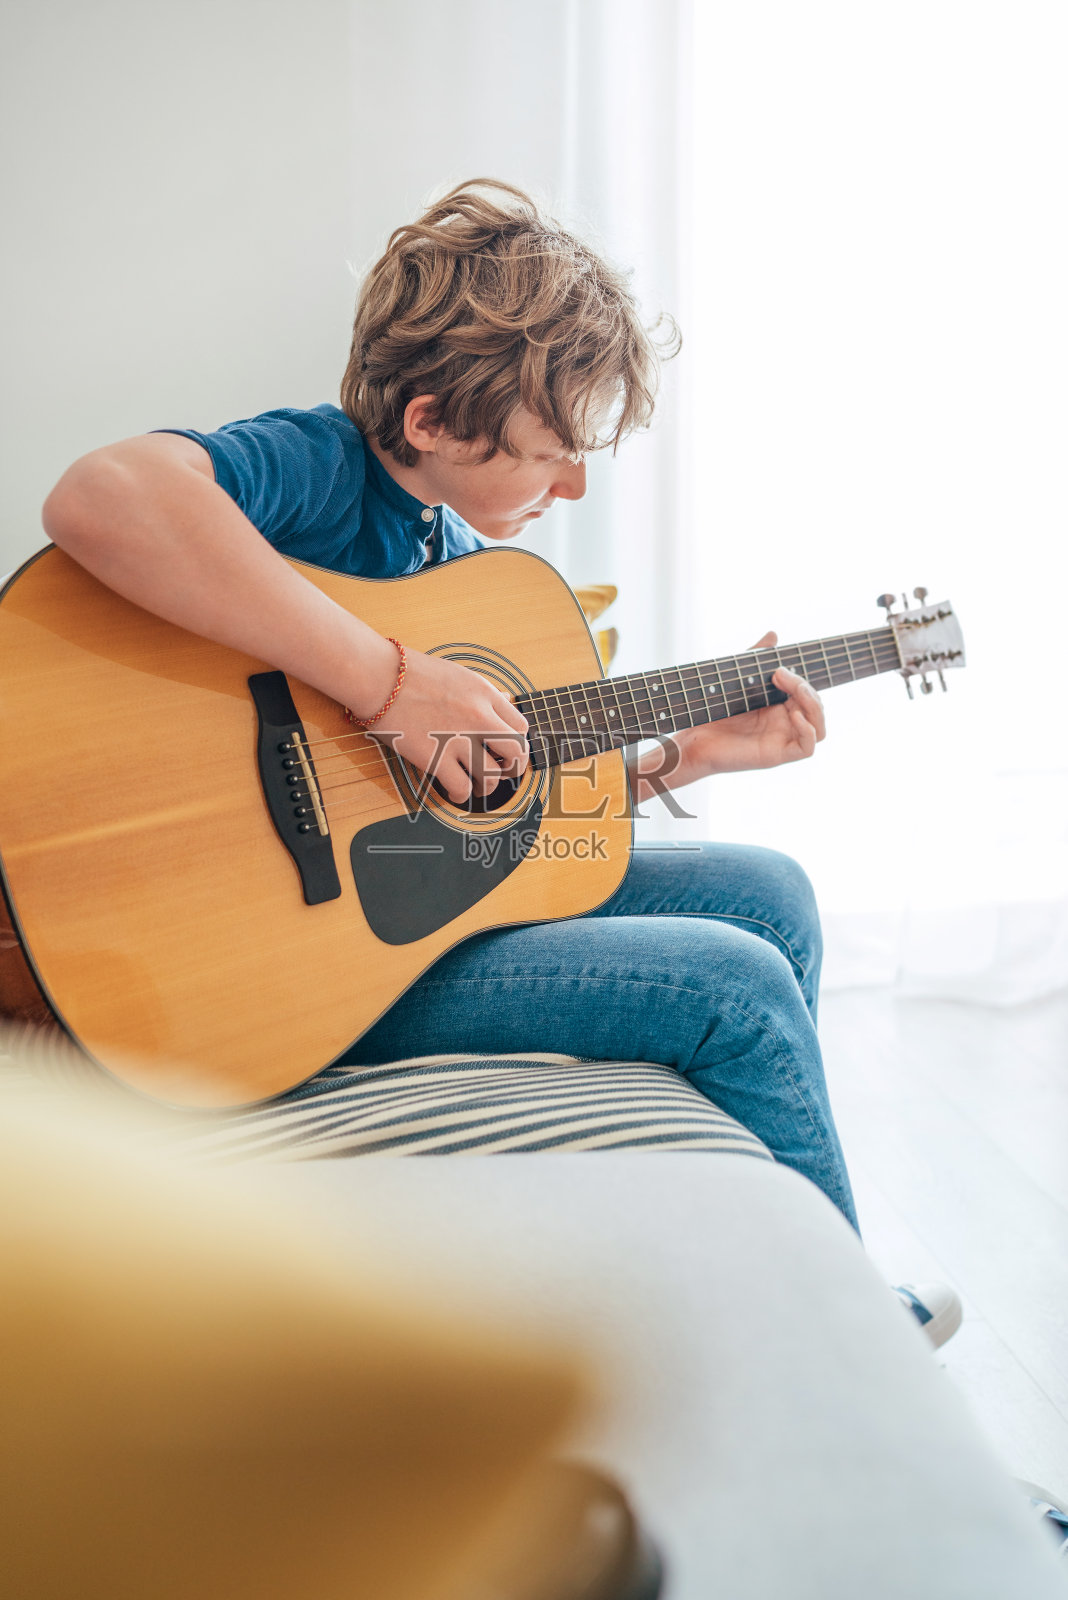 一个十几岁的男孩，穿着休闲牛仔裤和衬衫，弹着原声吉他，坐在家里客厅舒适的沙发上。音乐教育理念形象。照片摄影图片